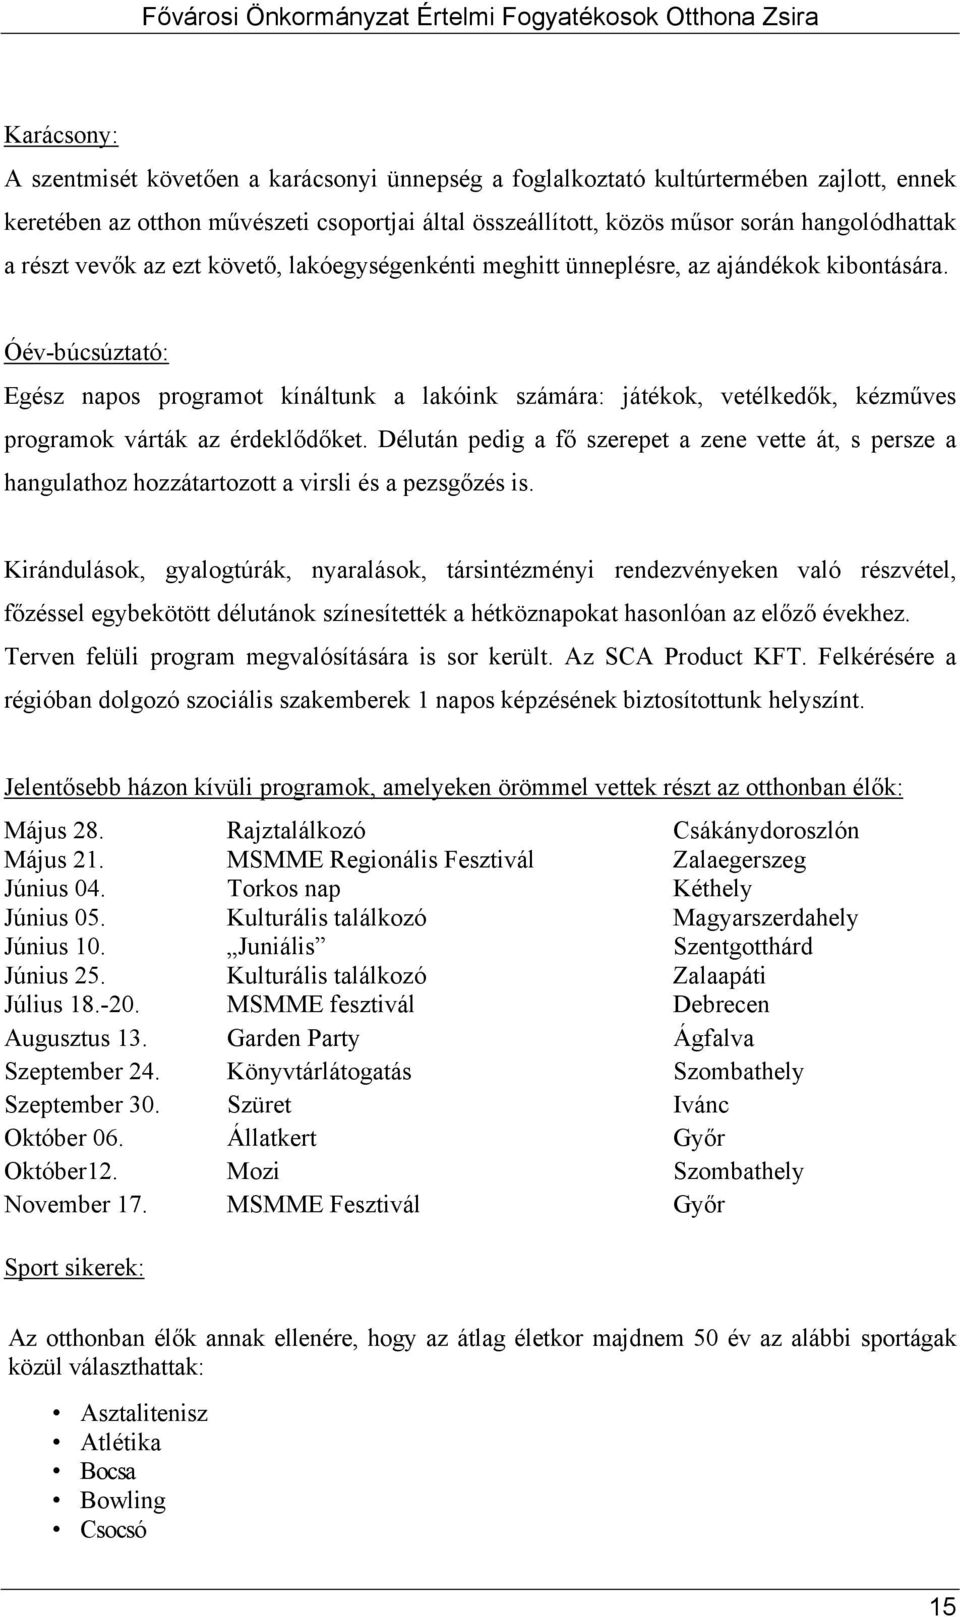 Fővárosi Önkormányzat Értelmi Fogyatékosok Otthona Zsira - PDF Free Download